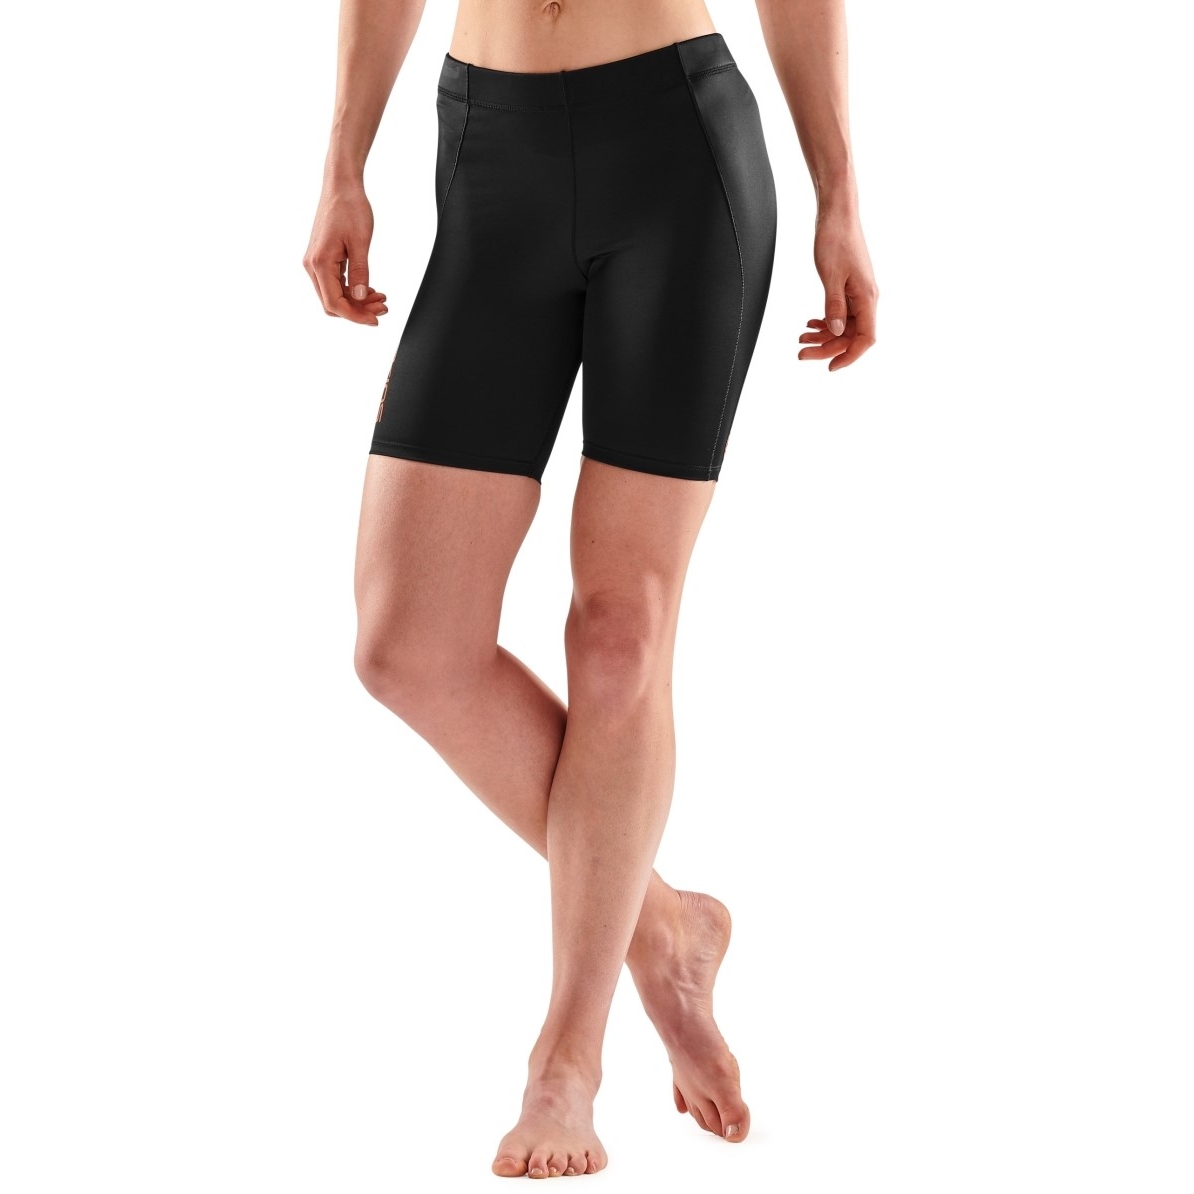 Produktbild von SKINS 5-Series Damen Power Shorts - Schwarz